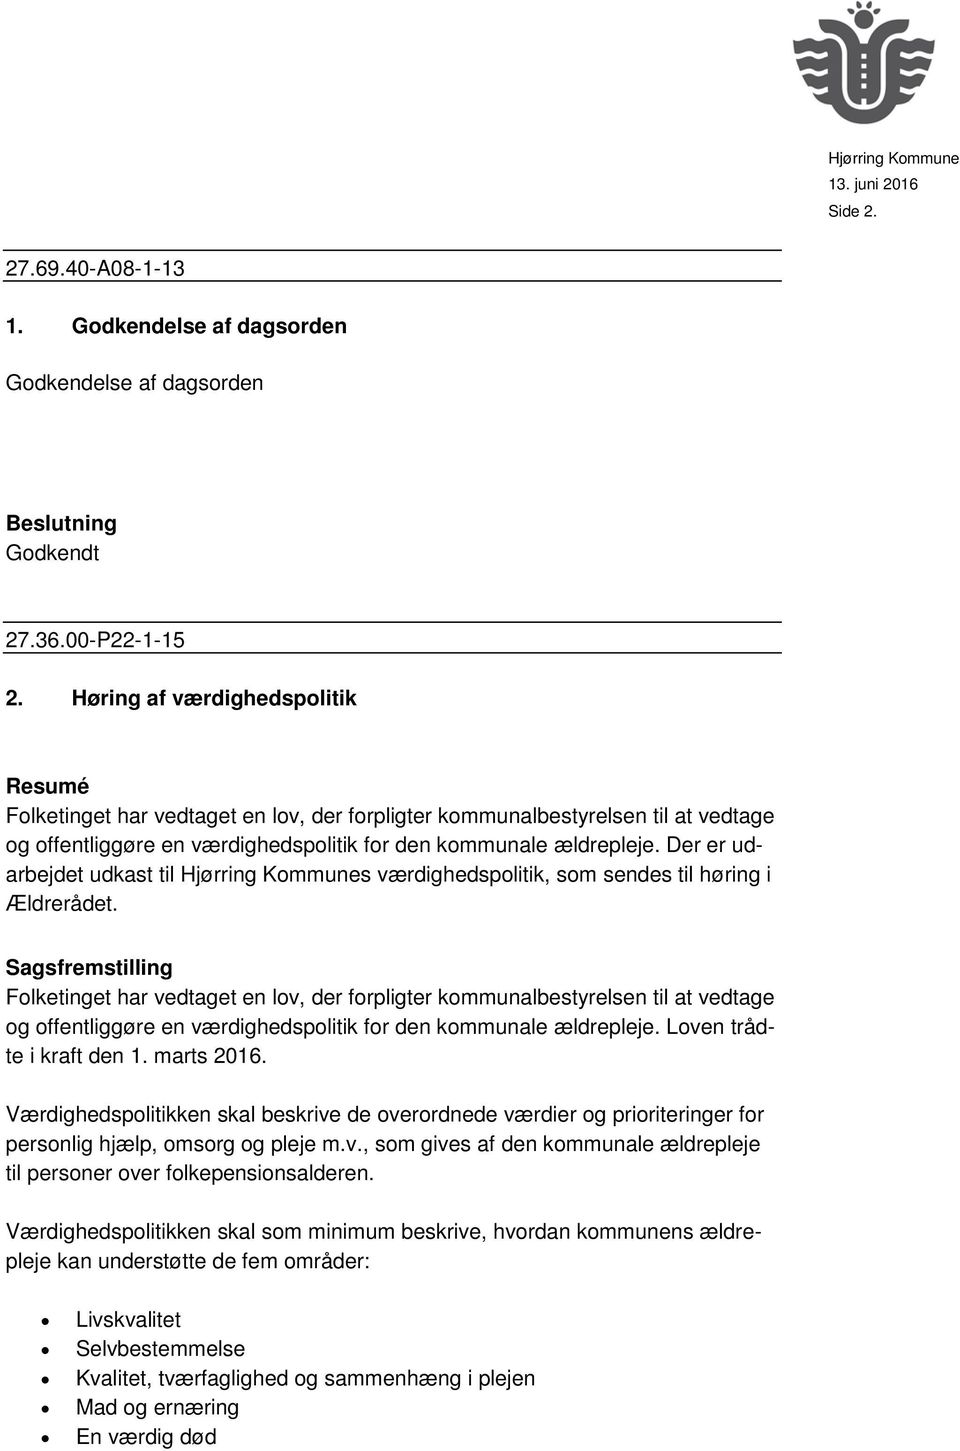 Der er udarbejdet udkast til Hjørring Kommunes værdighedspolitik, som sendes til høring i Ældrerådet.